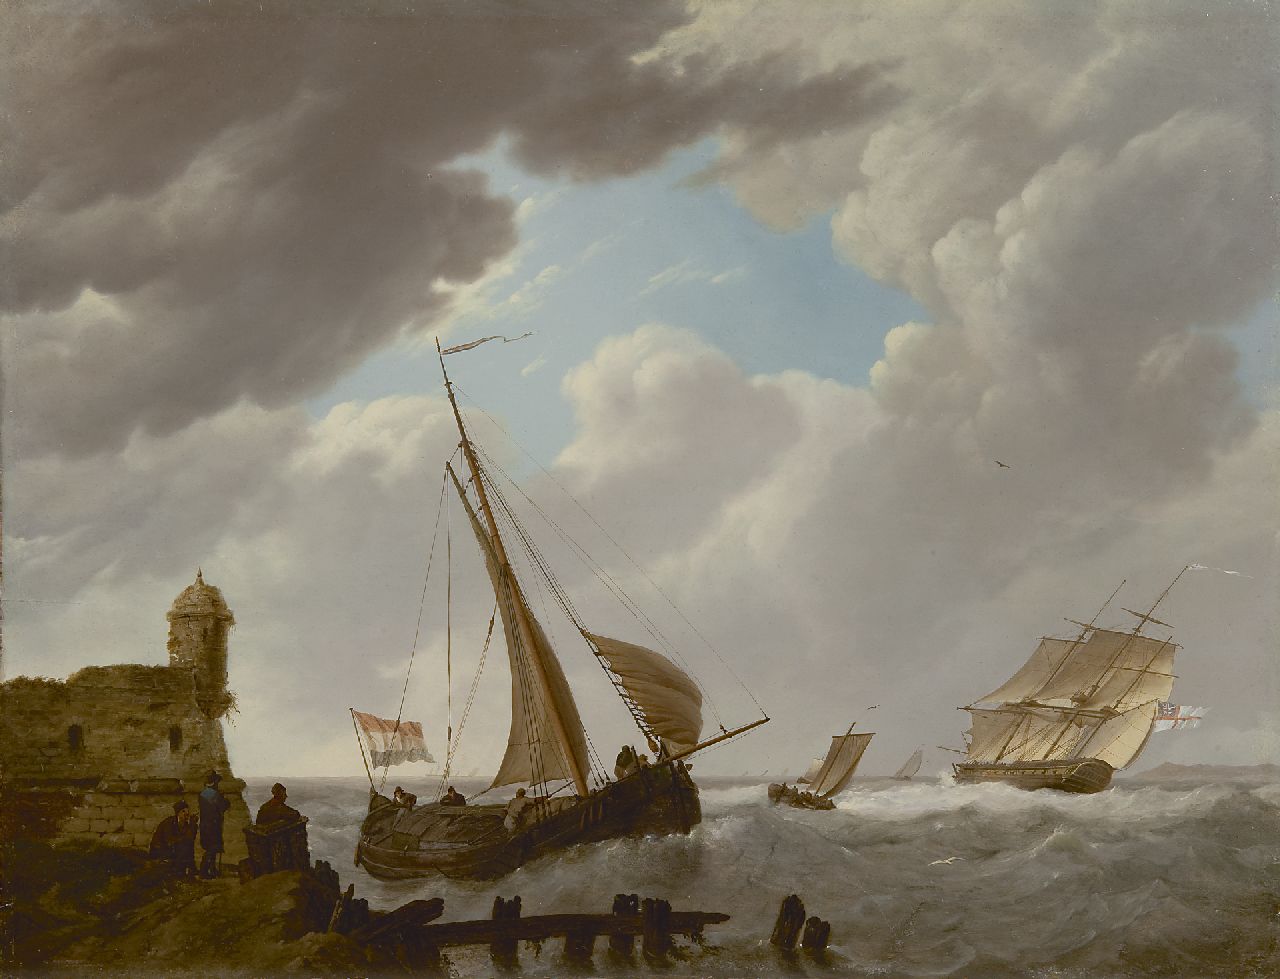 Koekkoek J.H.  | Johannes Hermanus Koekkoek, Sailing ships off the coast of Zeeland, oil on panel 36.0 x 47.0 cm, signed l.c.